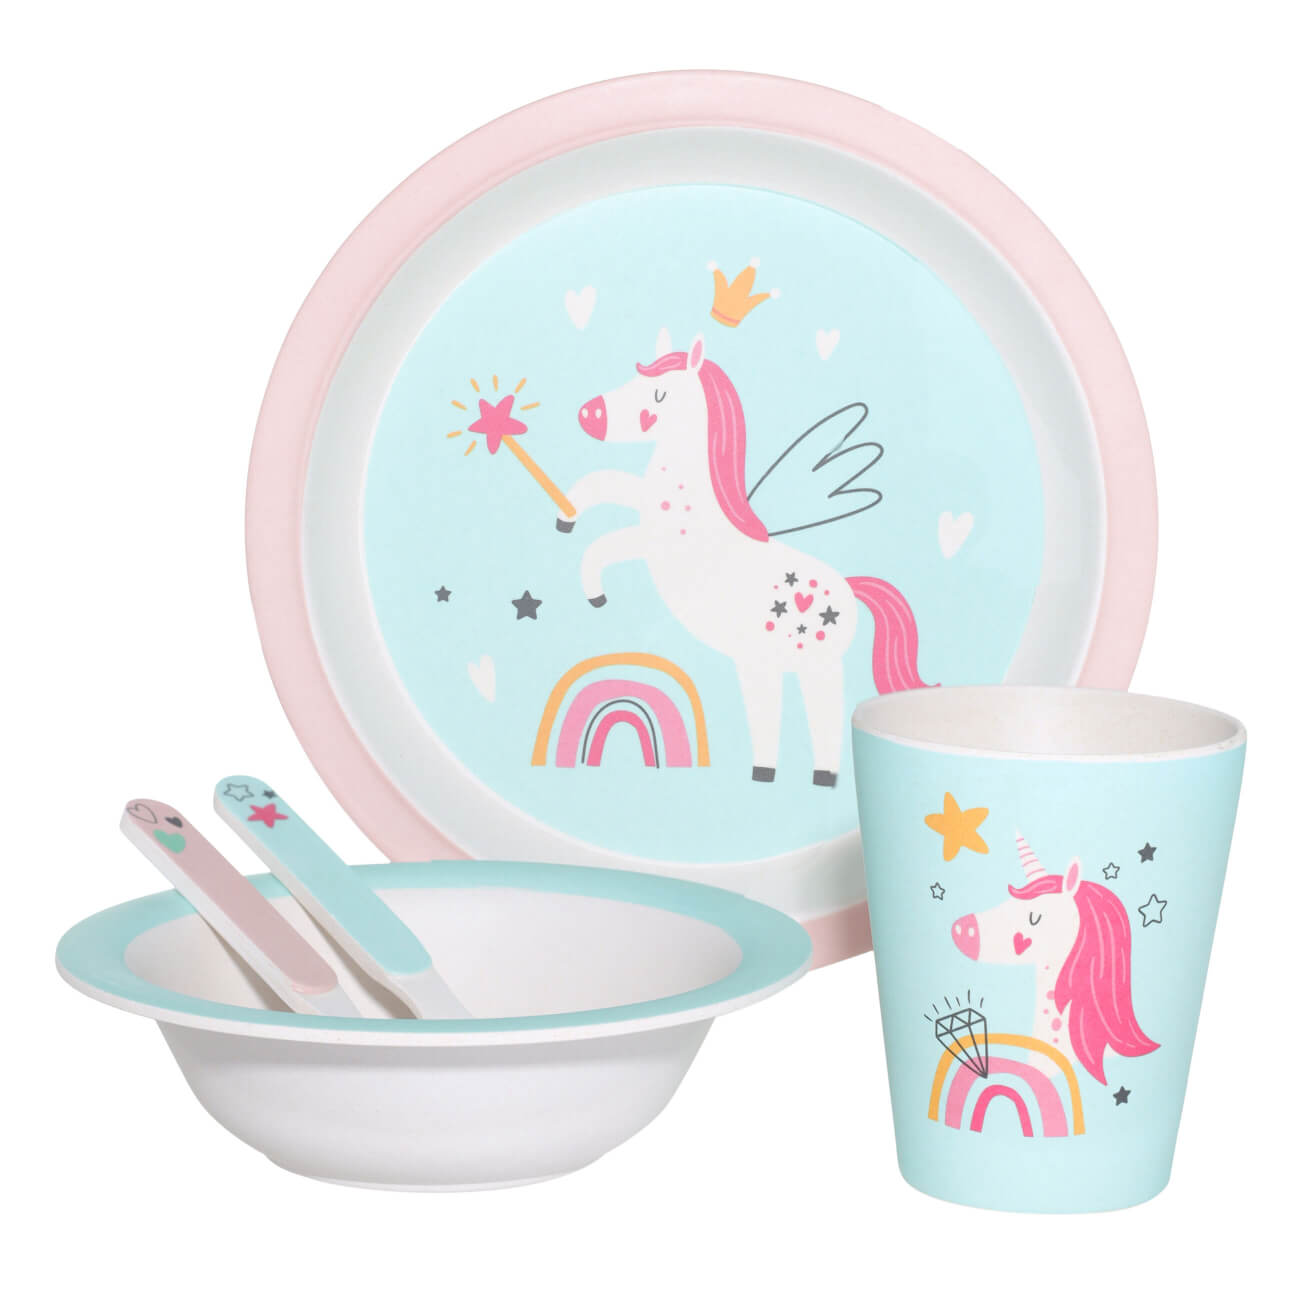 Набор посуды, детский, 5 пр, бамбук, розово-мятный, Единорог и радуга, Unicorn набор посуды детский 3 пр фарфор f бело розовый единорог в облаках unicorn